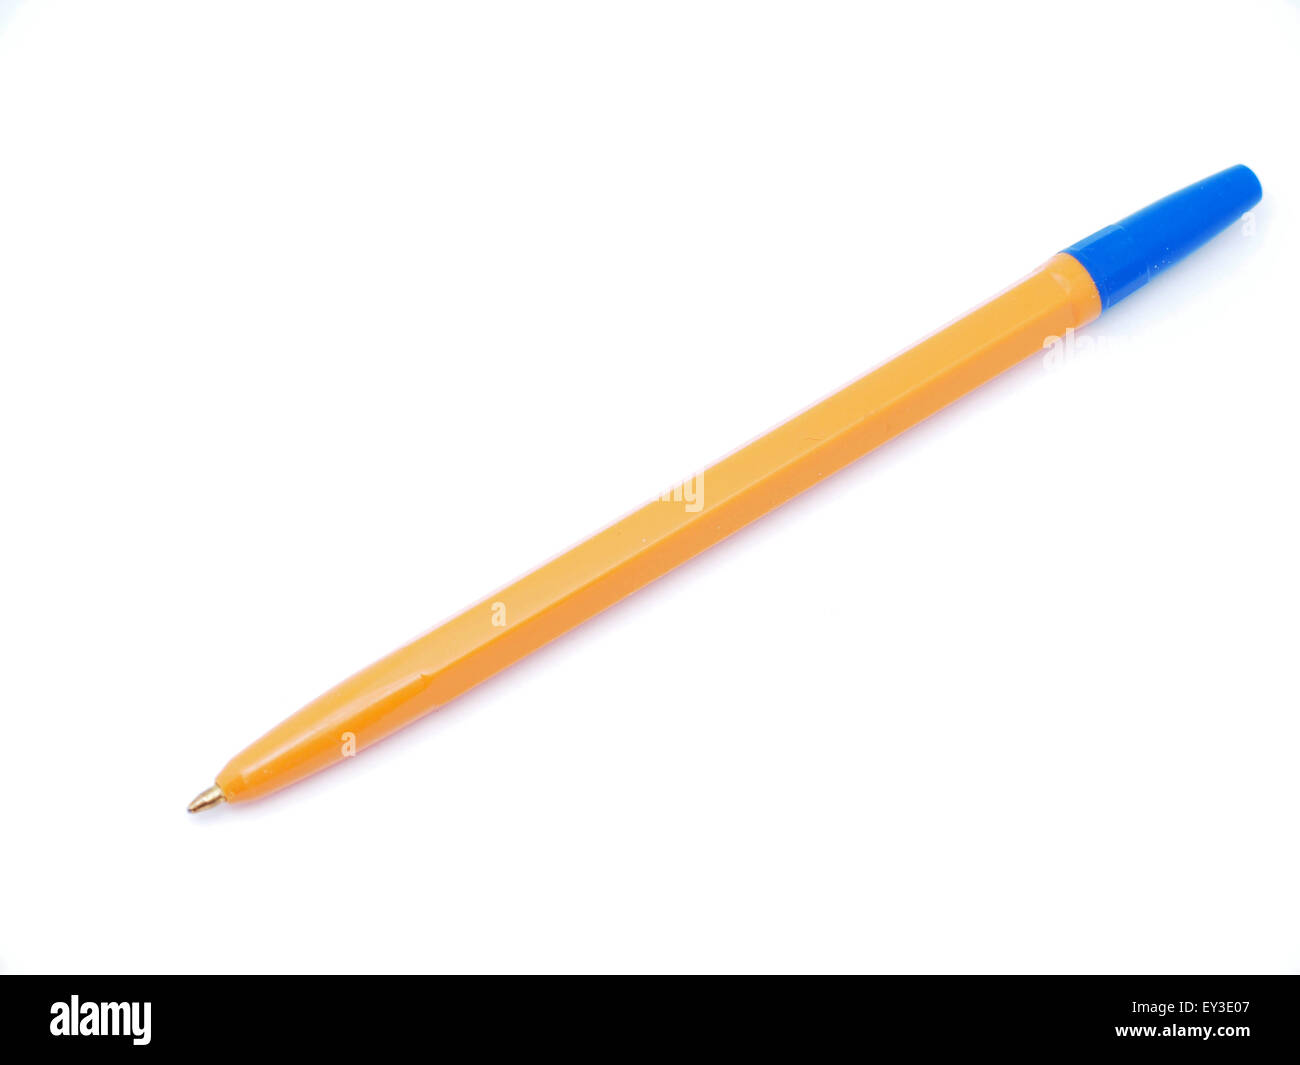 ballpoint pen on a white background Stock Photo